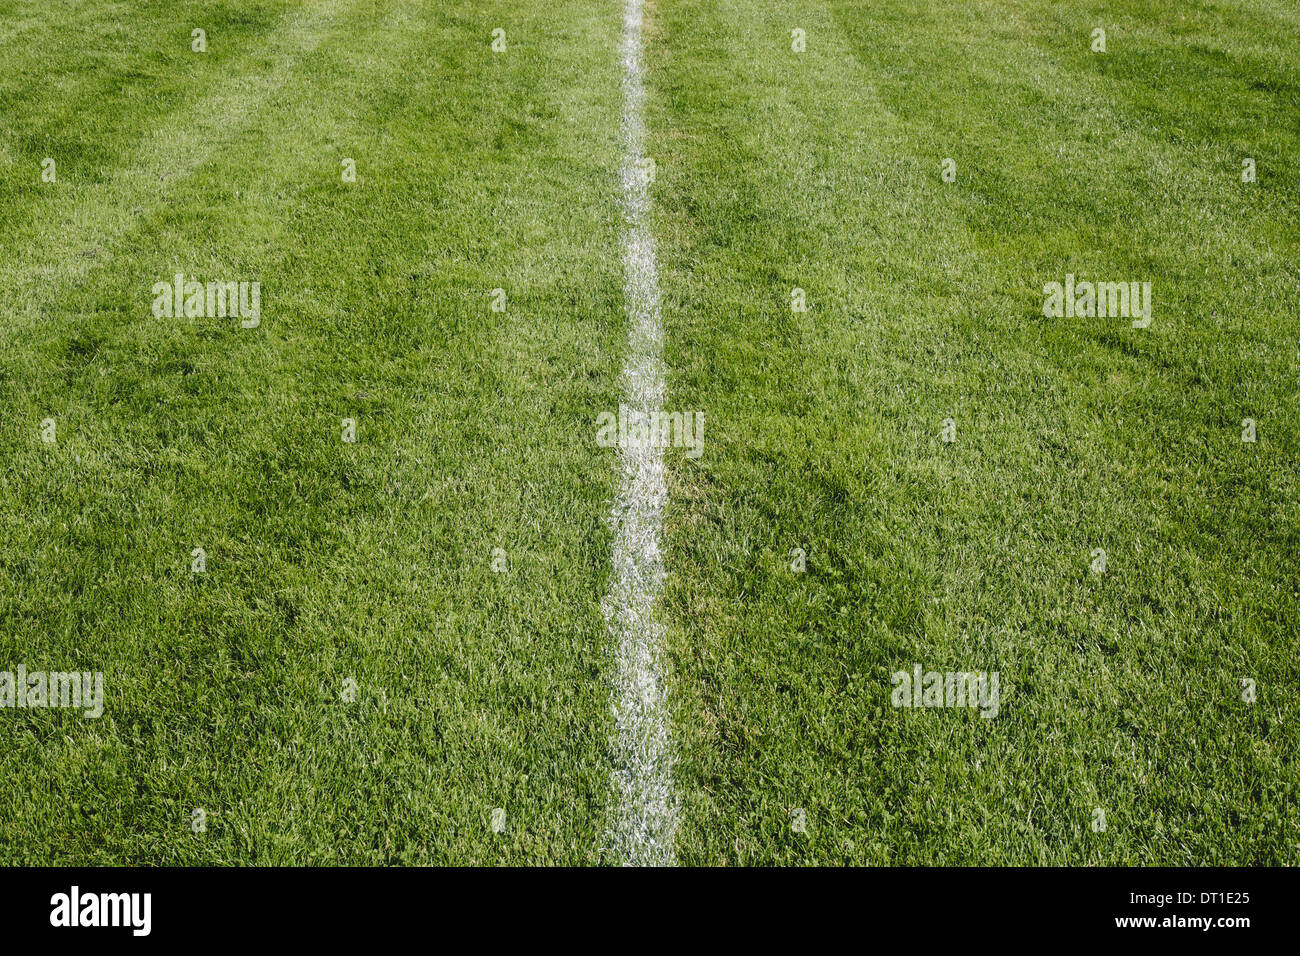 Stato di Washington Stati Uniti d'America centrale bianco sulla linea di taglio di erba superficie sportiva Foto Stock